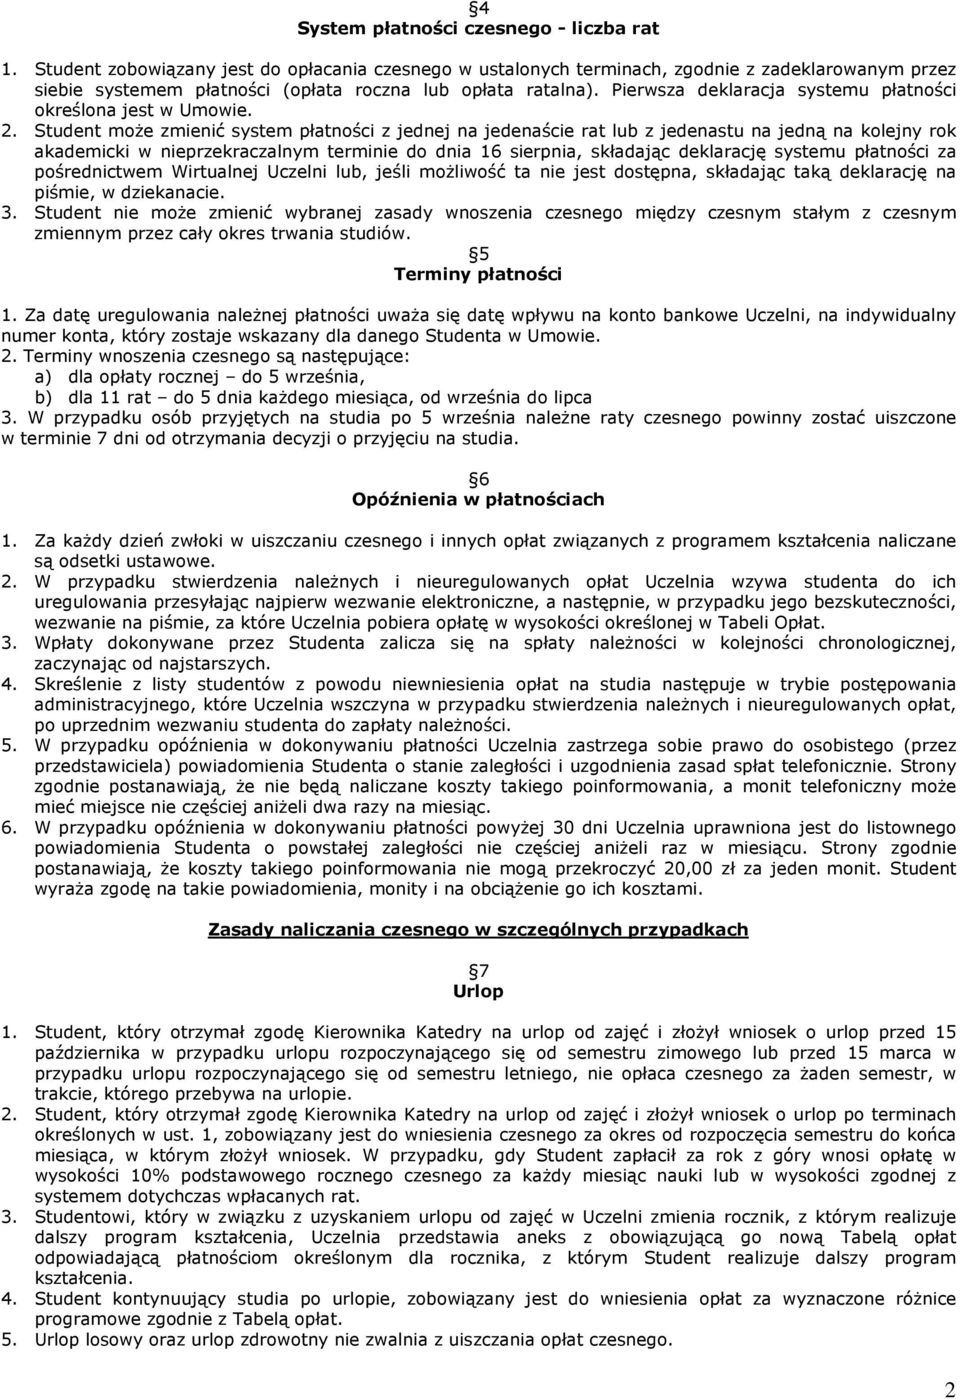 Pierwsza deklaracja systemu płatności określona jest w Umowie. 2.